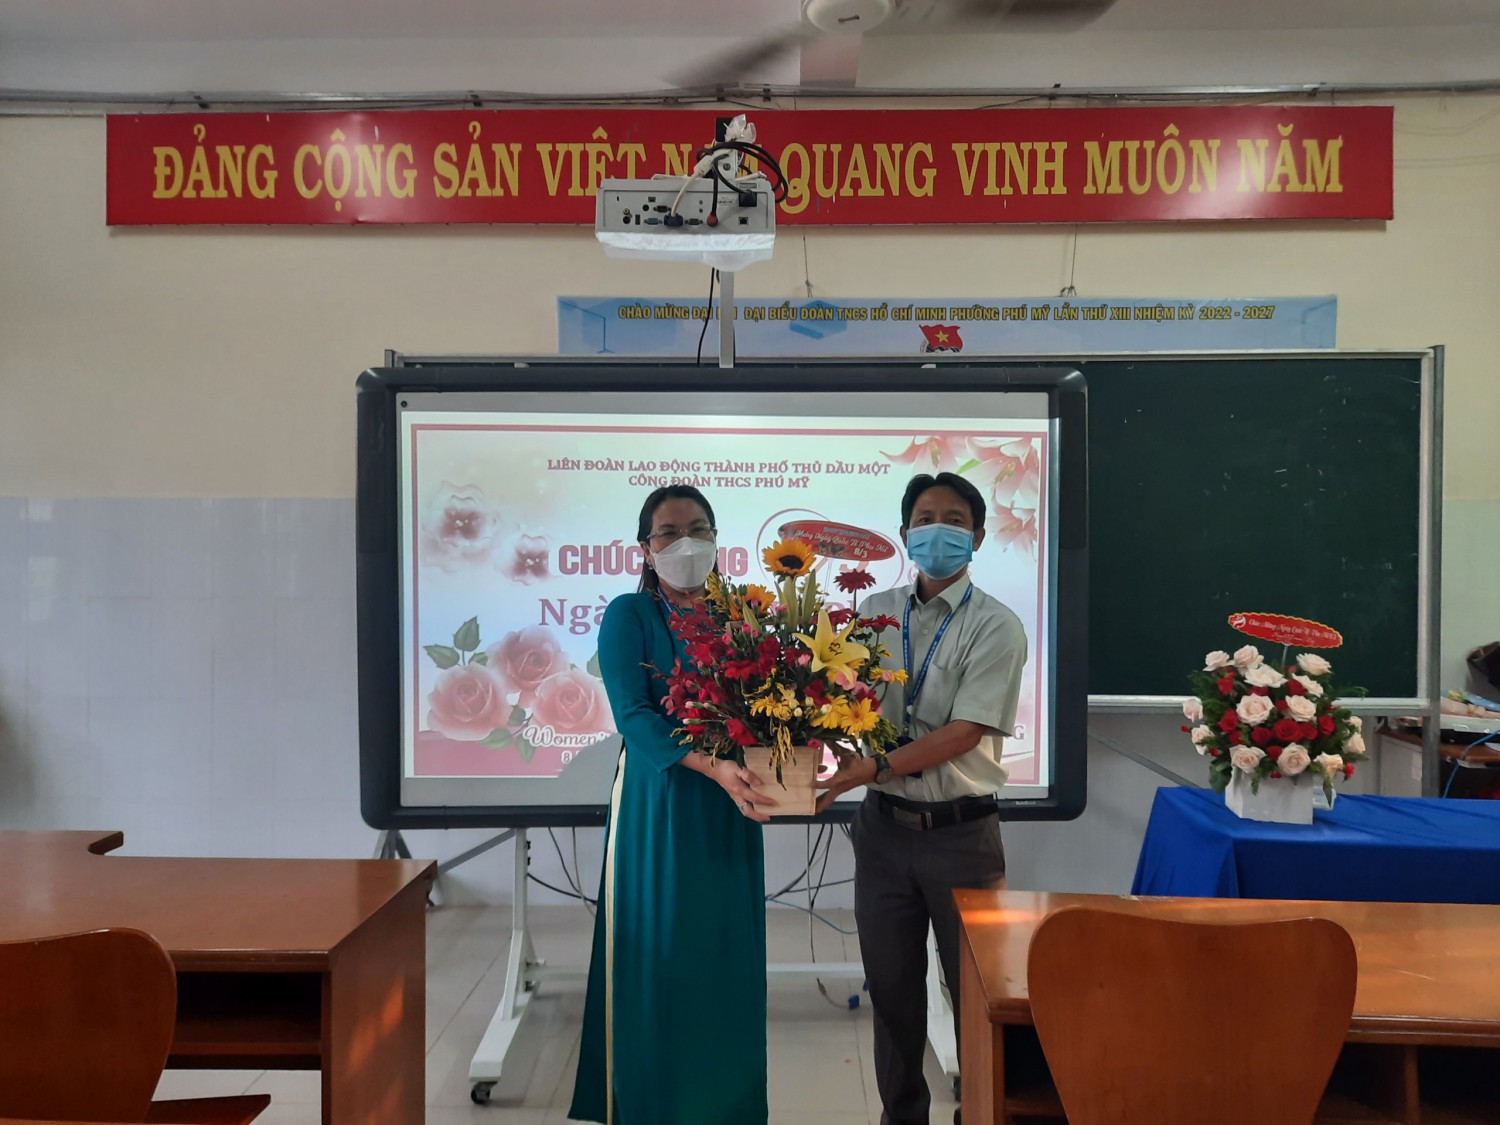 Đ/c Phạm Thị Bích Thủy - Hiệu trưởng nhà trường nhận hoa chúc mừng